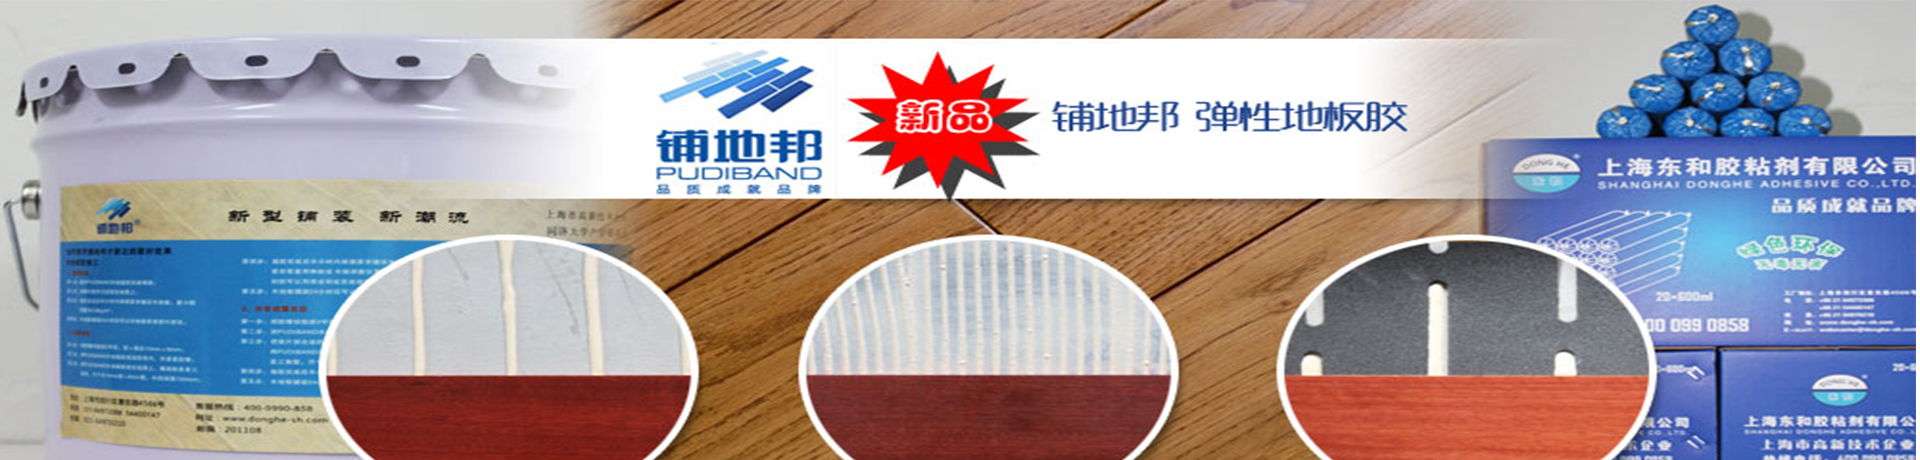 上海东和胶粘剂有限公司